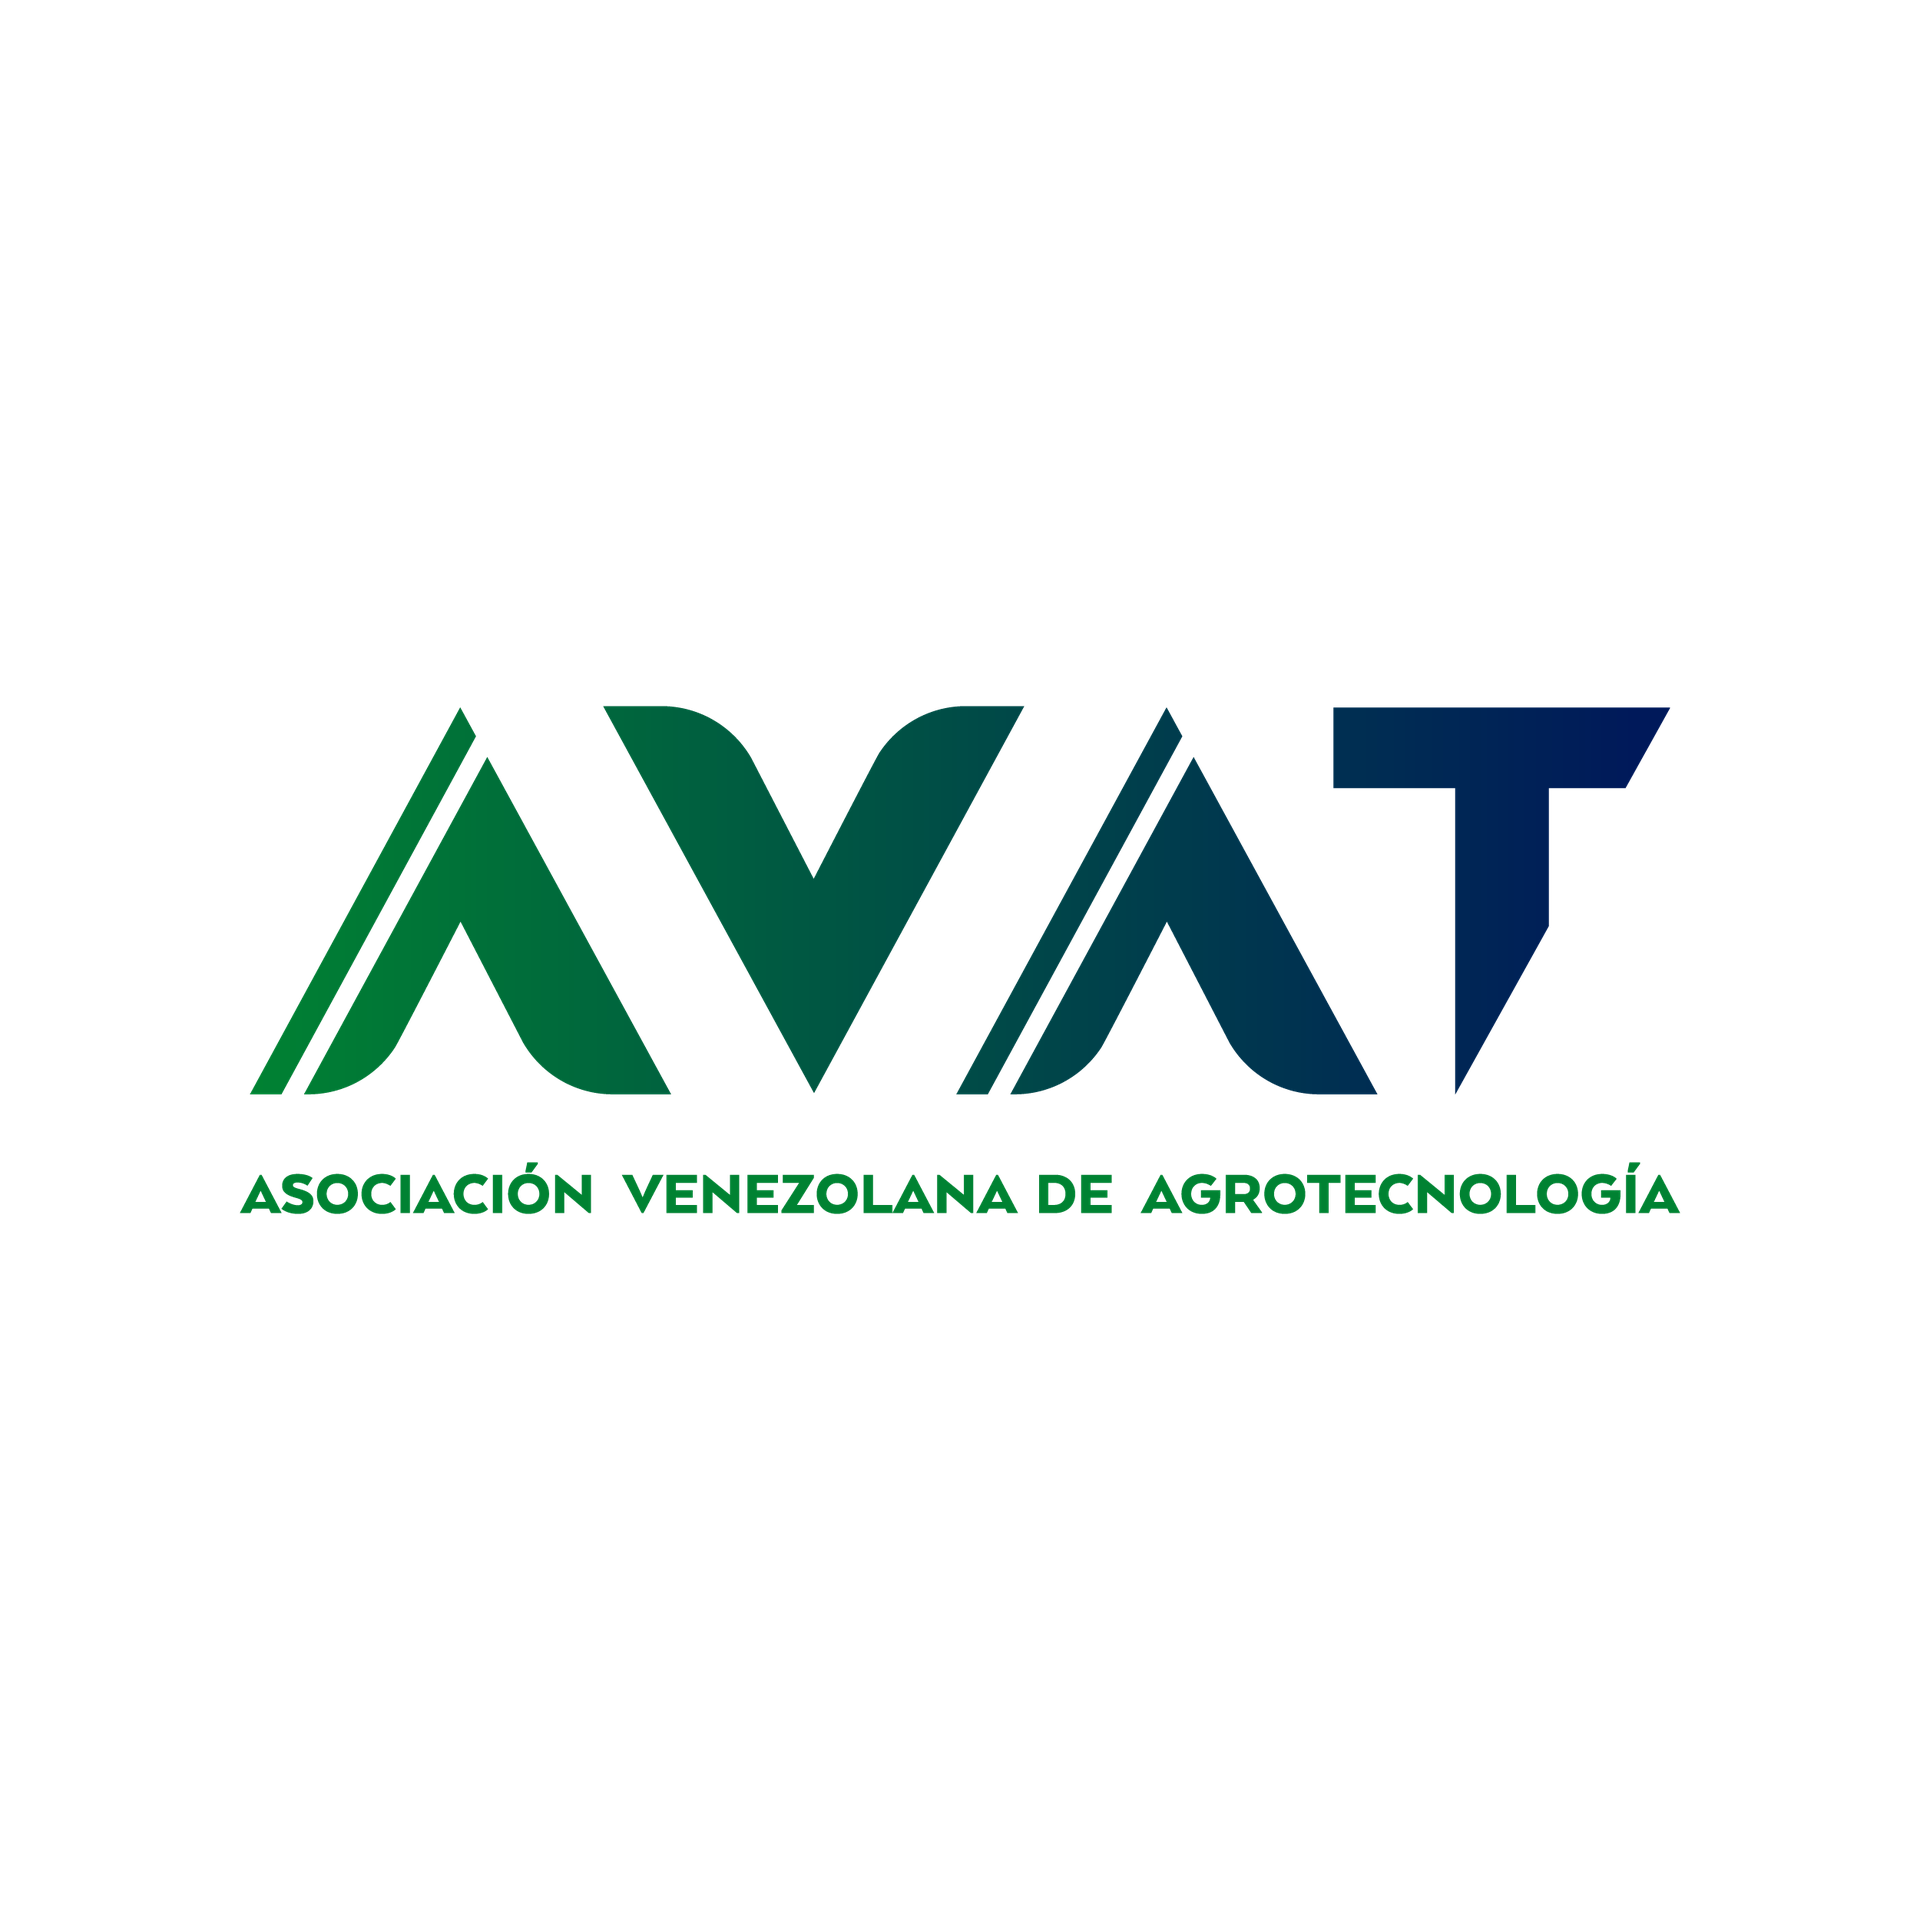 AVAT, Asociación Venezolana de Agrotecnología (AVAT)